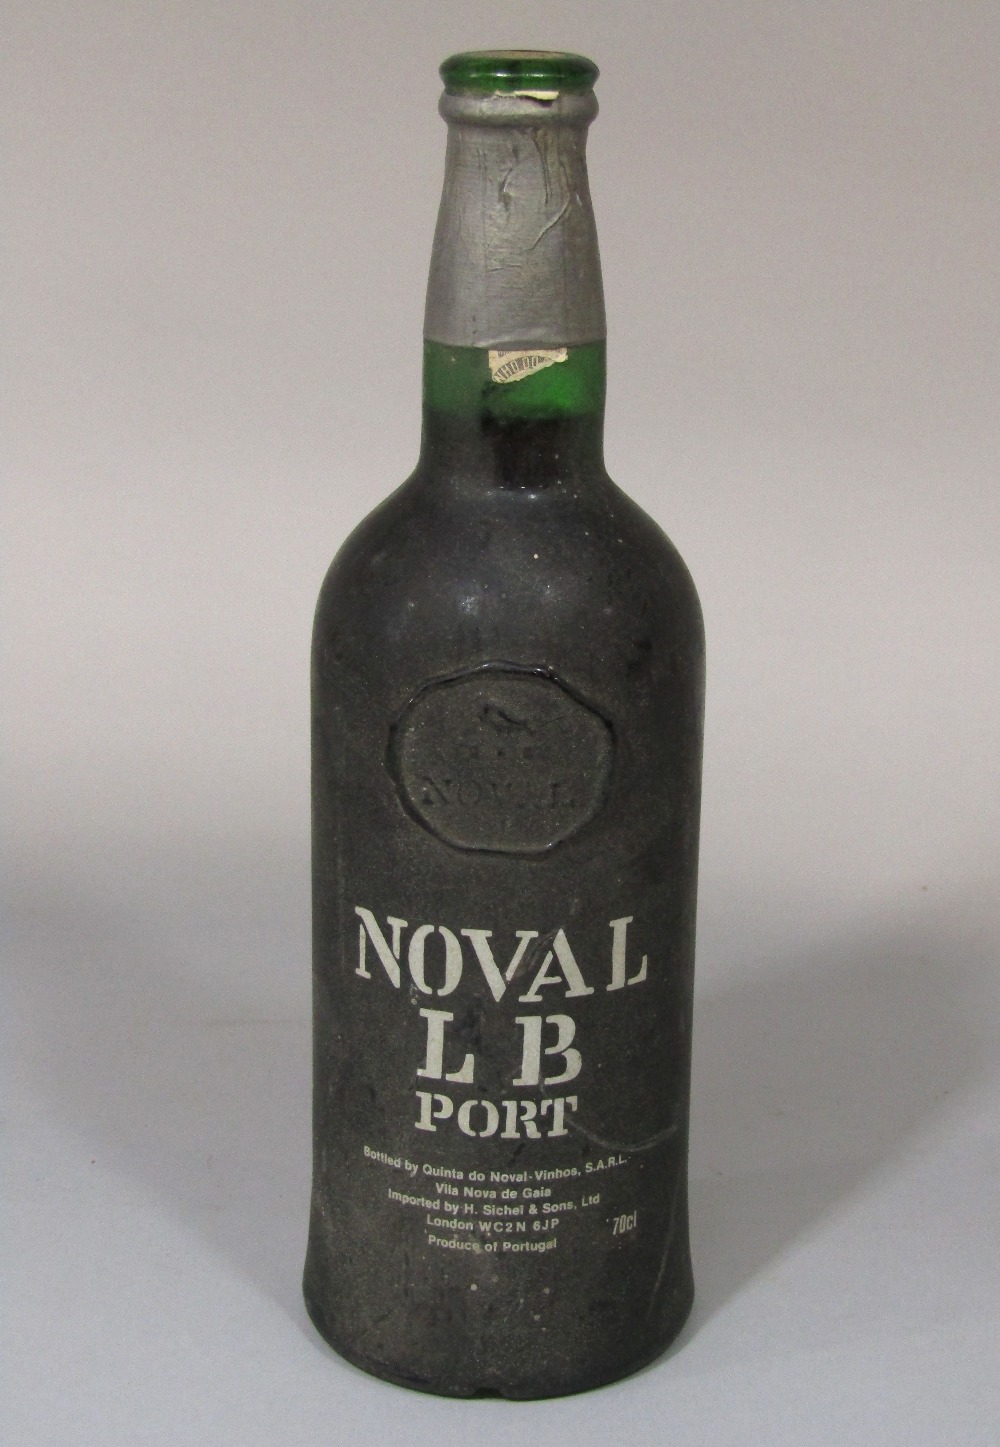 A Noval bottle of port